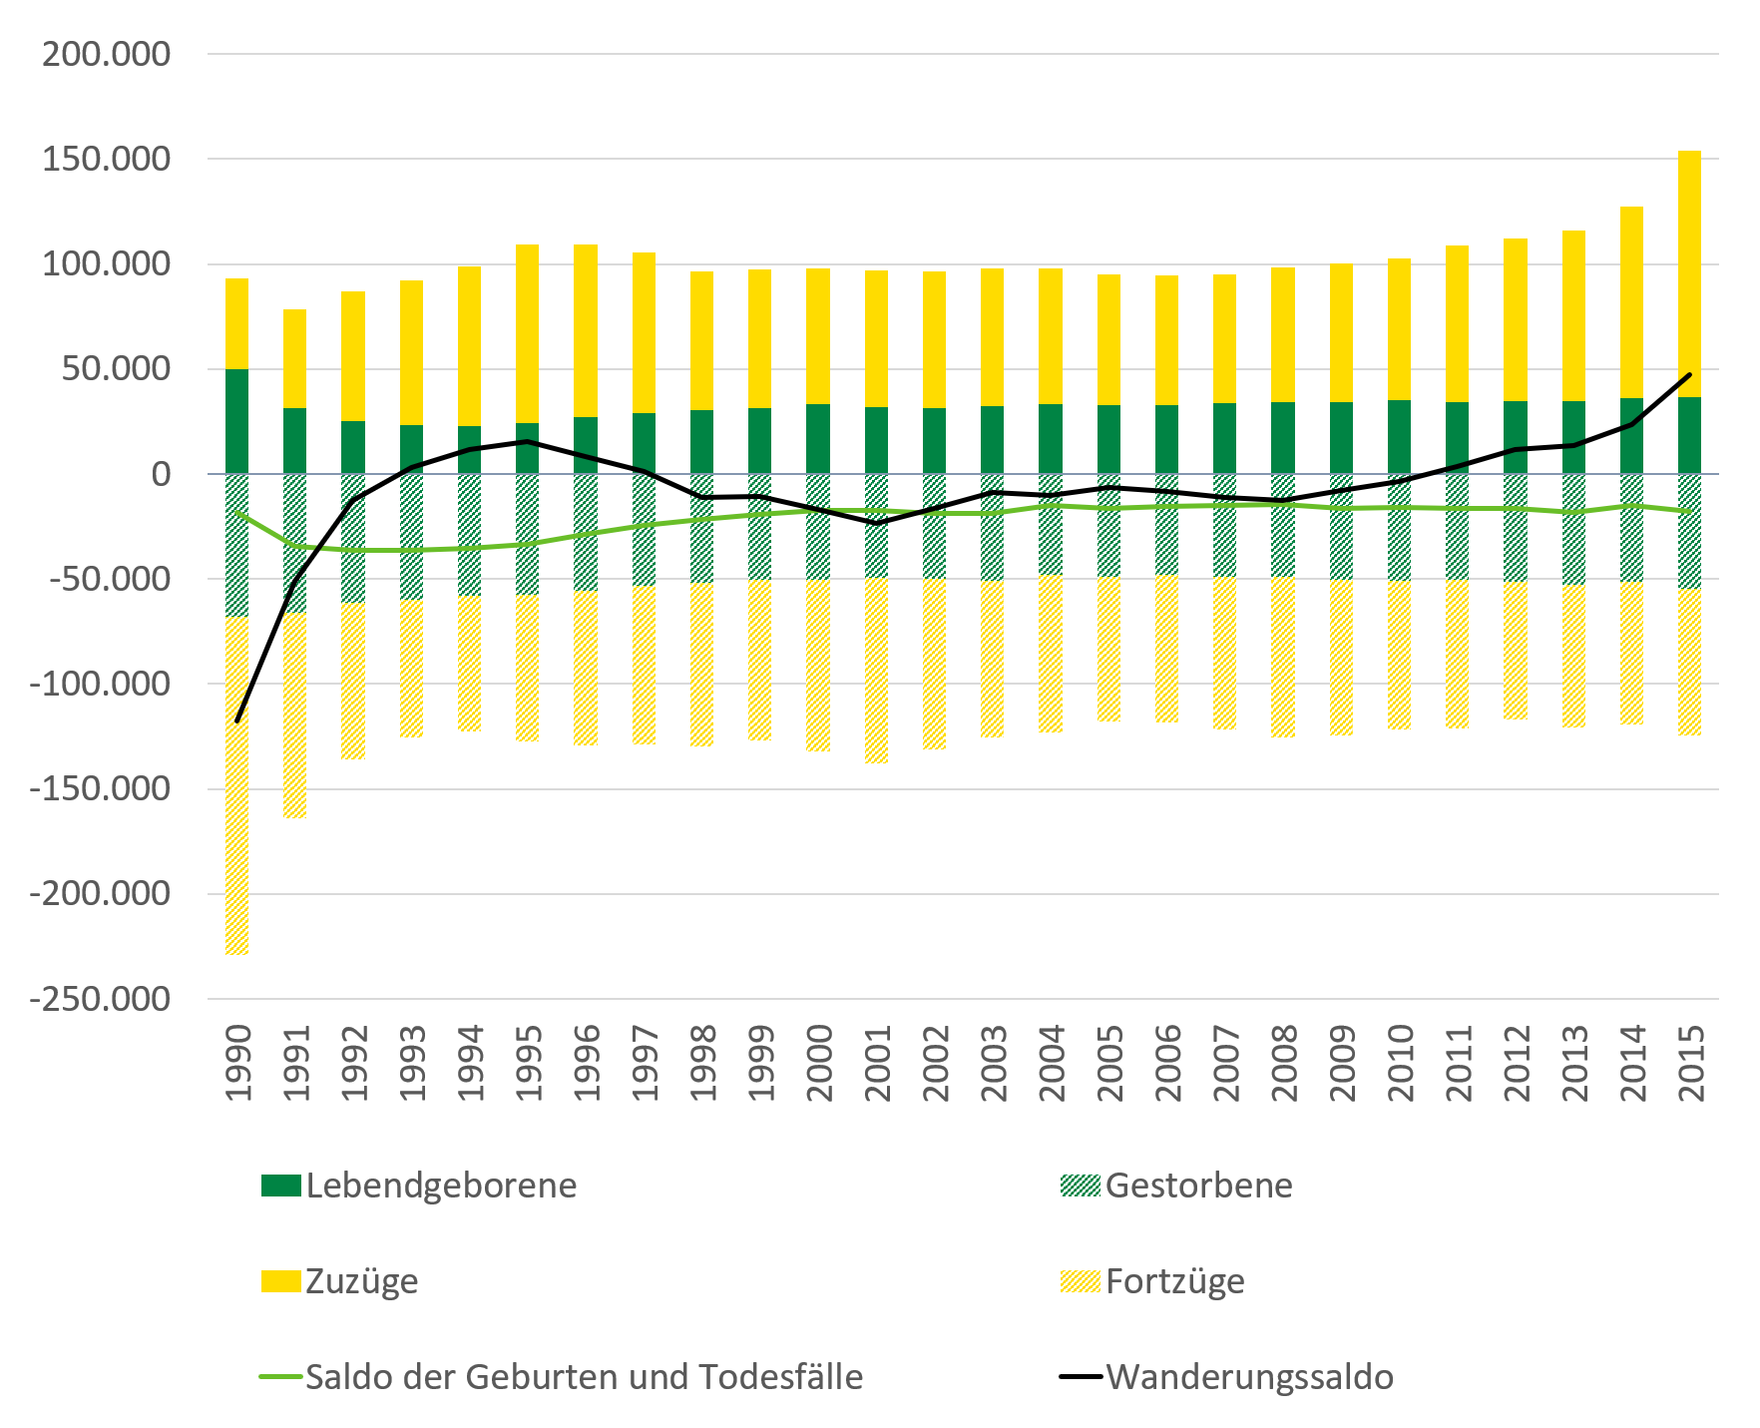 Die Abbildung zeigt den negativen Saldo der Geburten und Todesfällen von 1990 bis 2015 sowie den Verlauf des Wanderungssaldos, der seit 2010 wieder positive Werte aufweist.